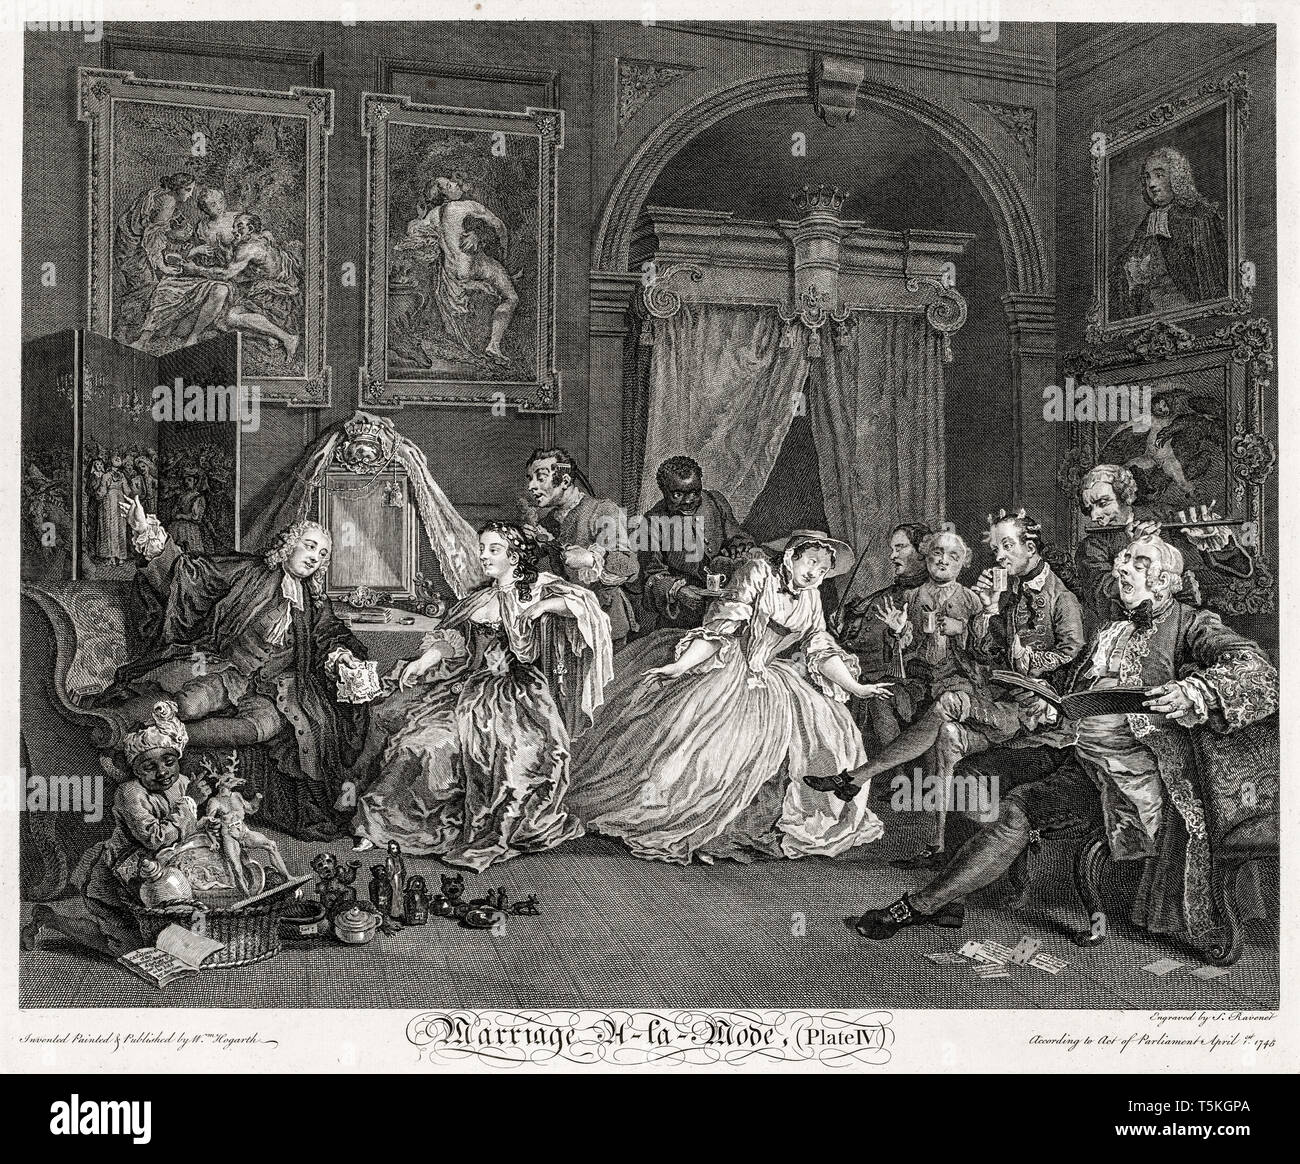 William Hogarth, matrimonio à la mode: il wc scena, incisione, 1745 Foto Stock